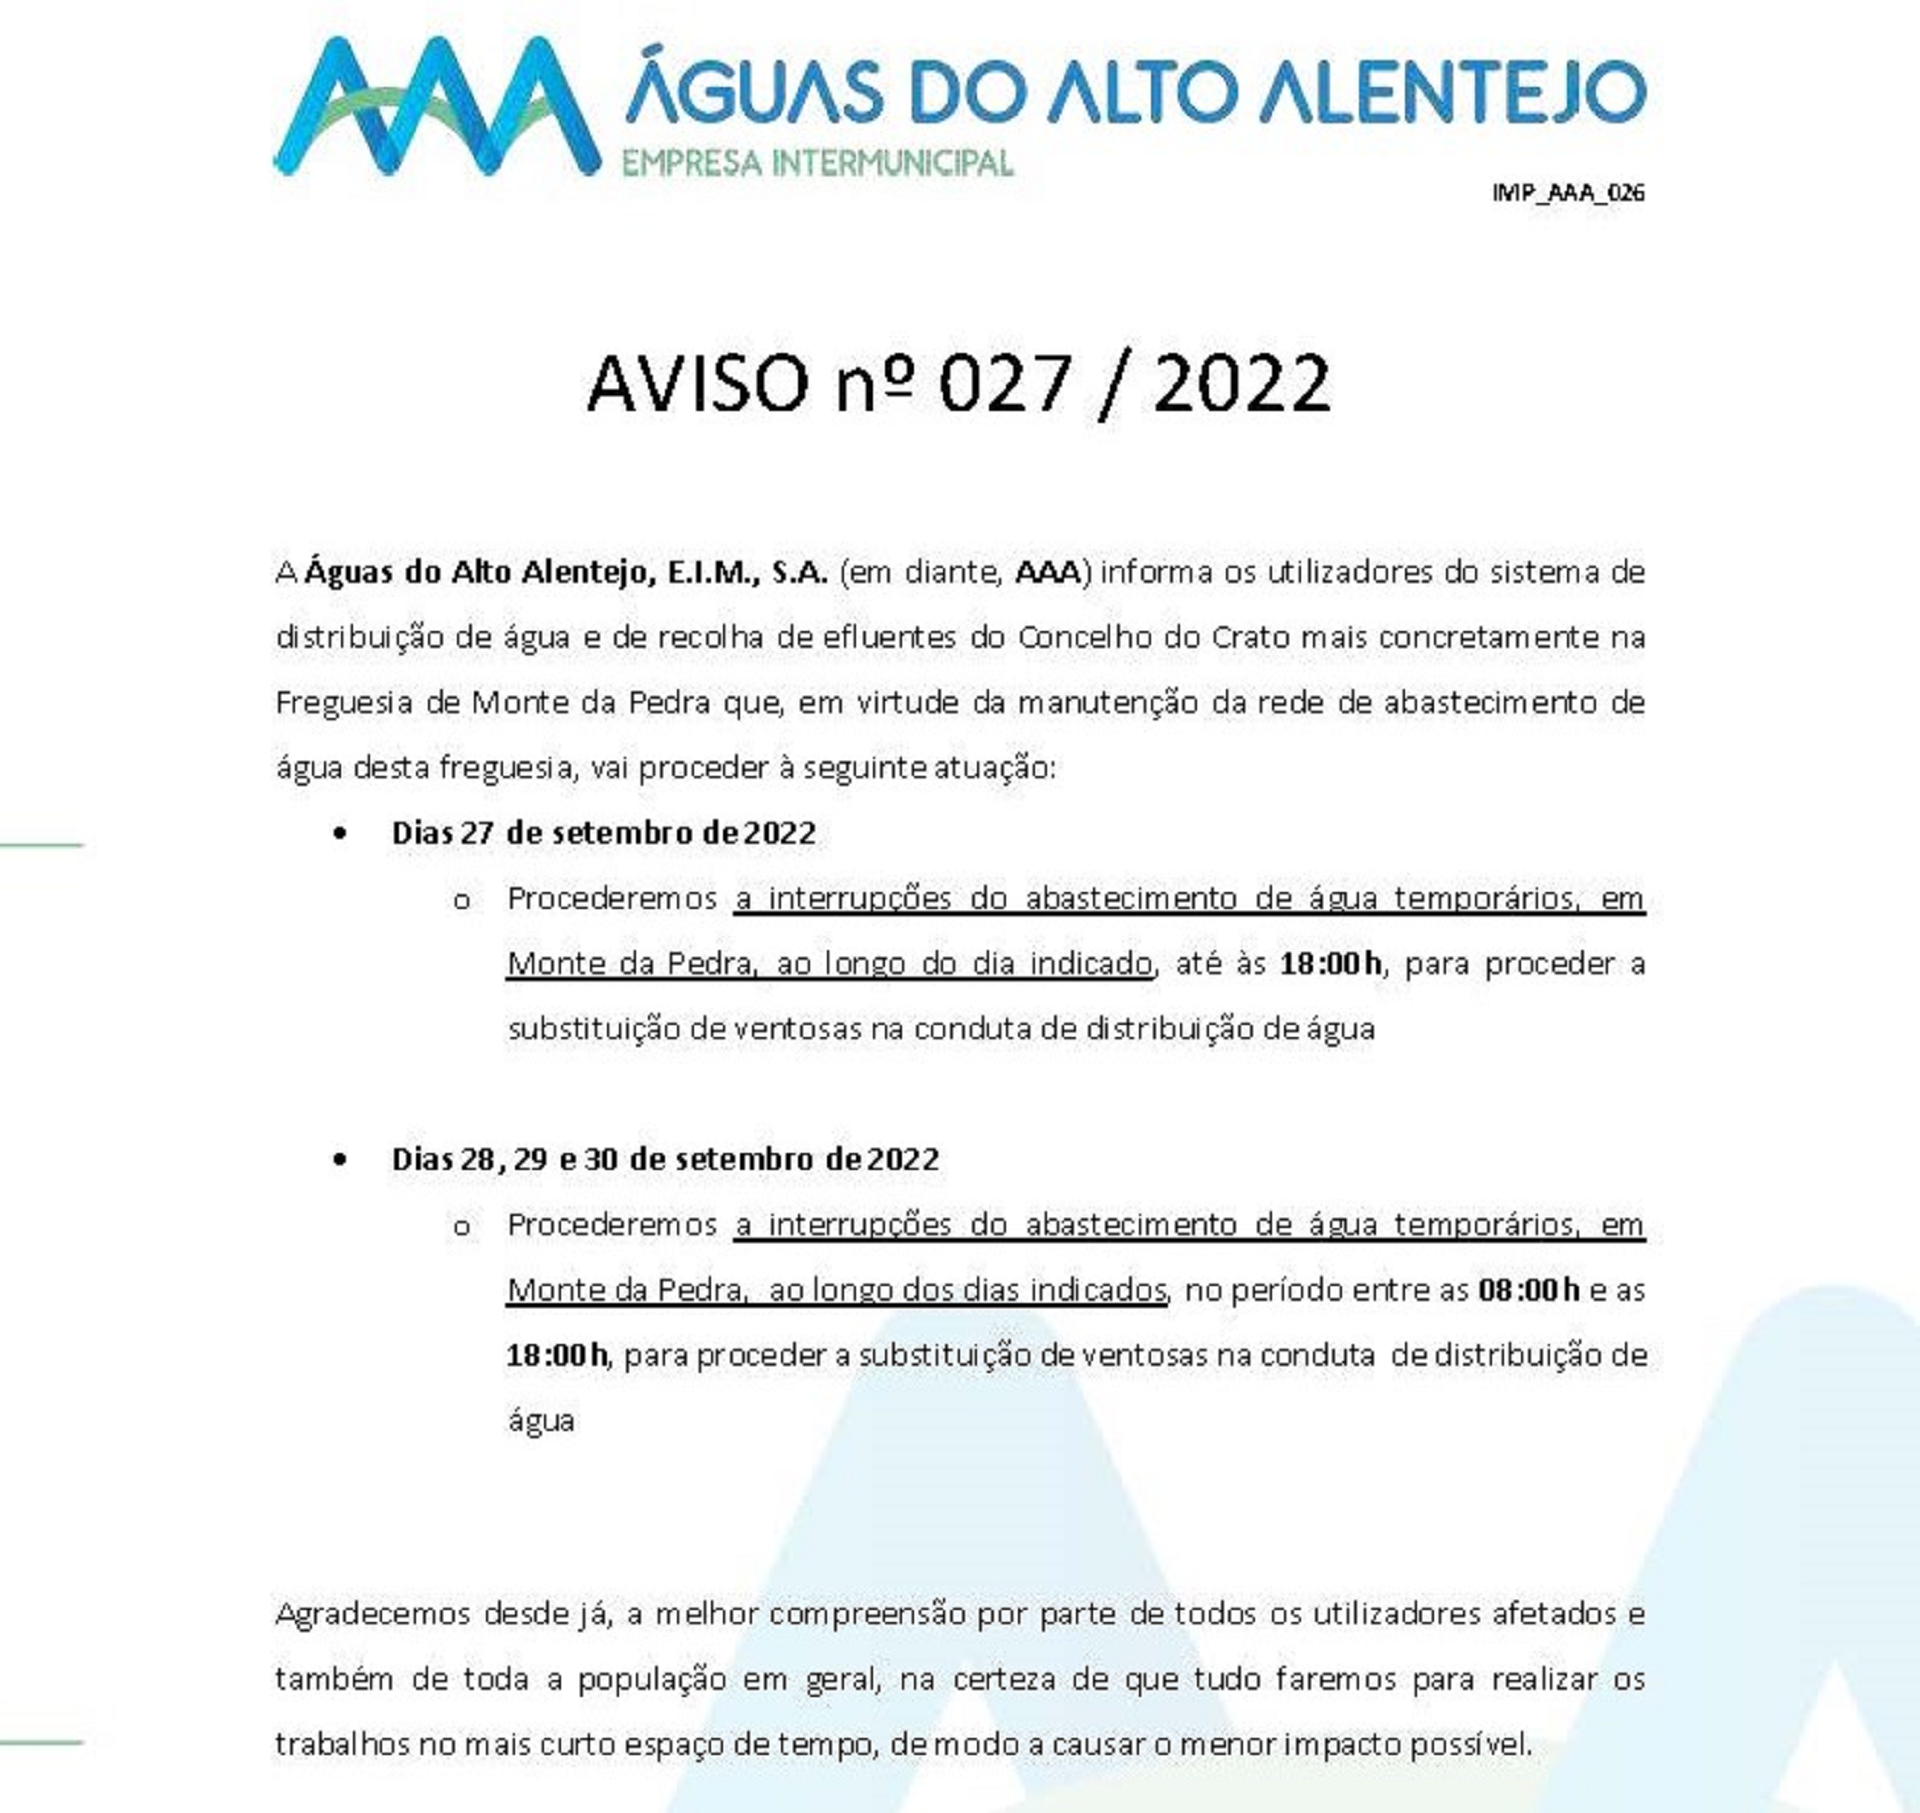 Águas do Alto Alentejo – Aviso nº 027/2022